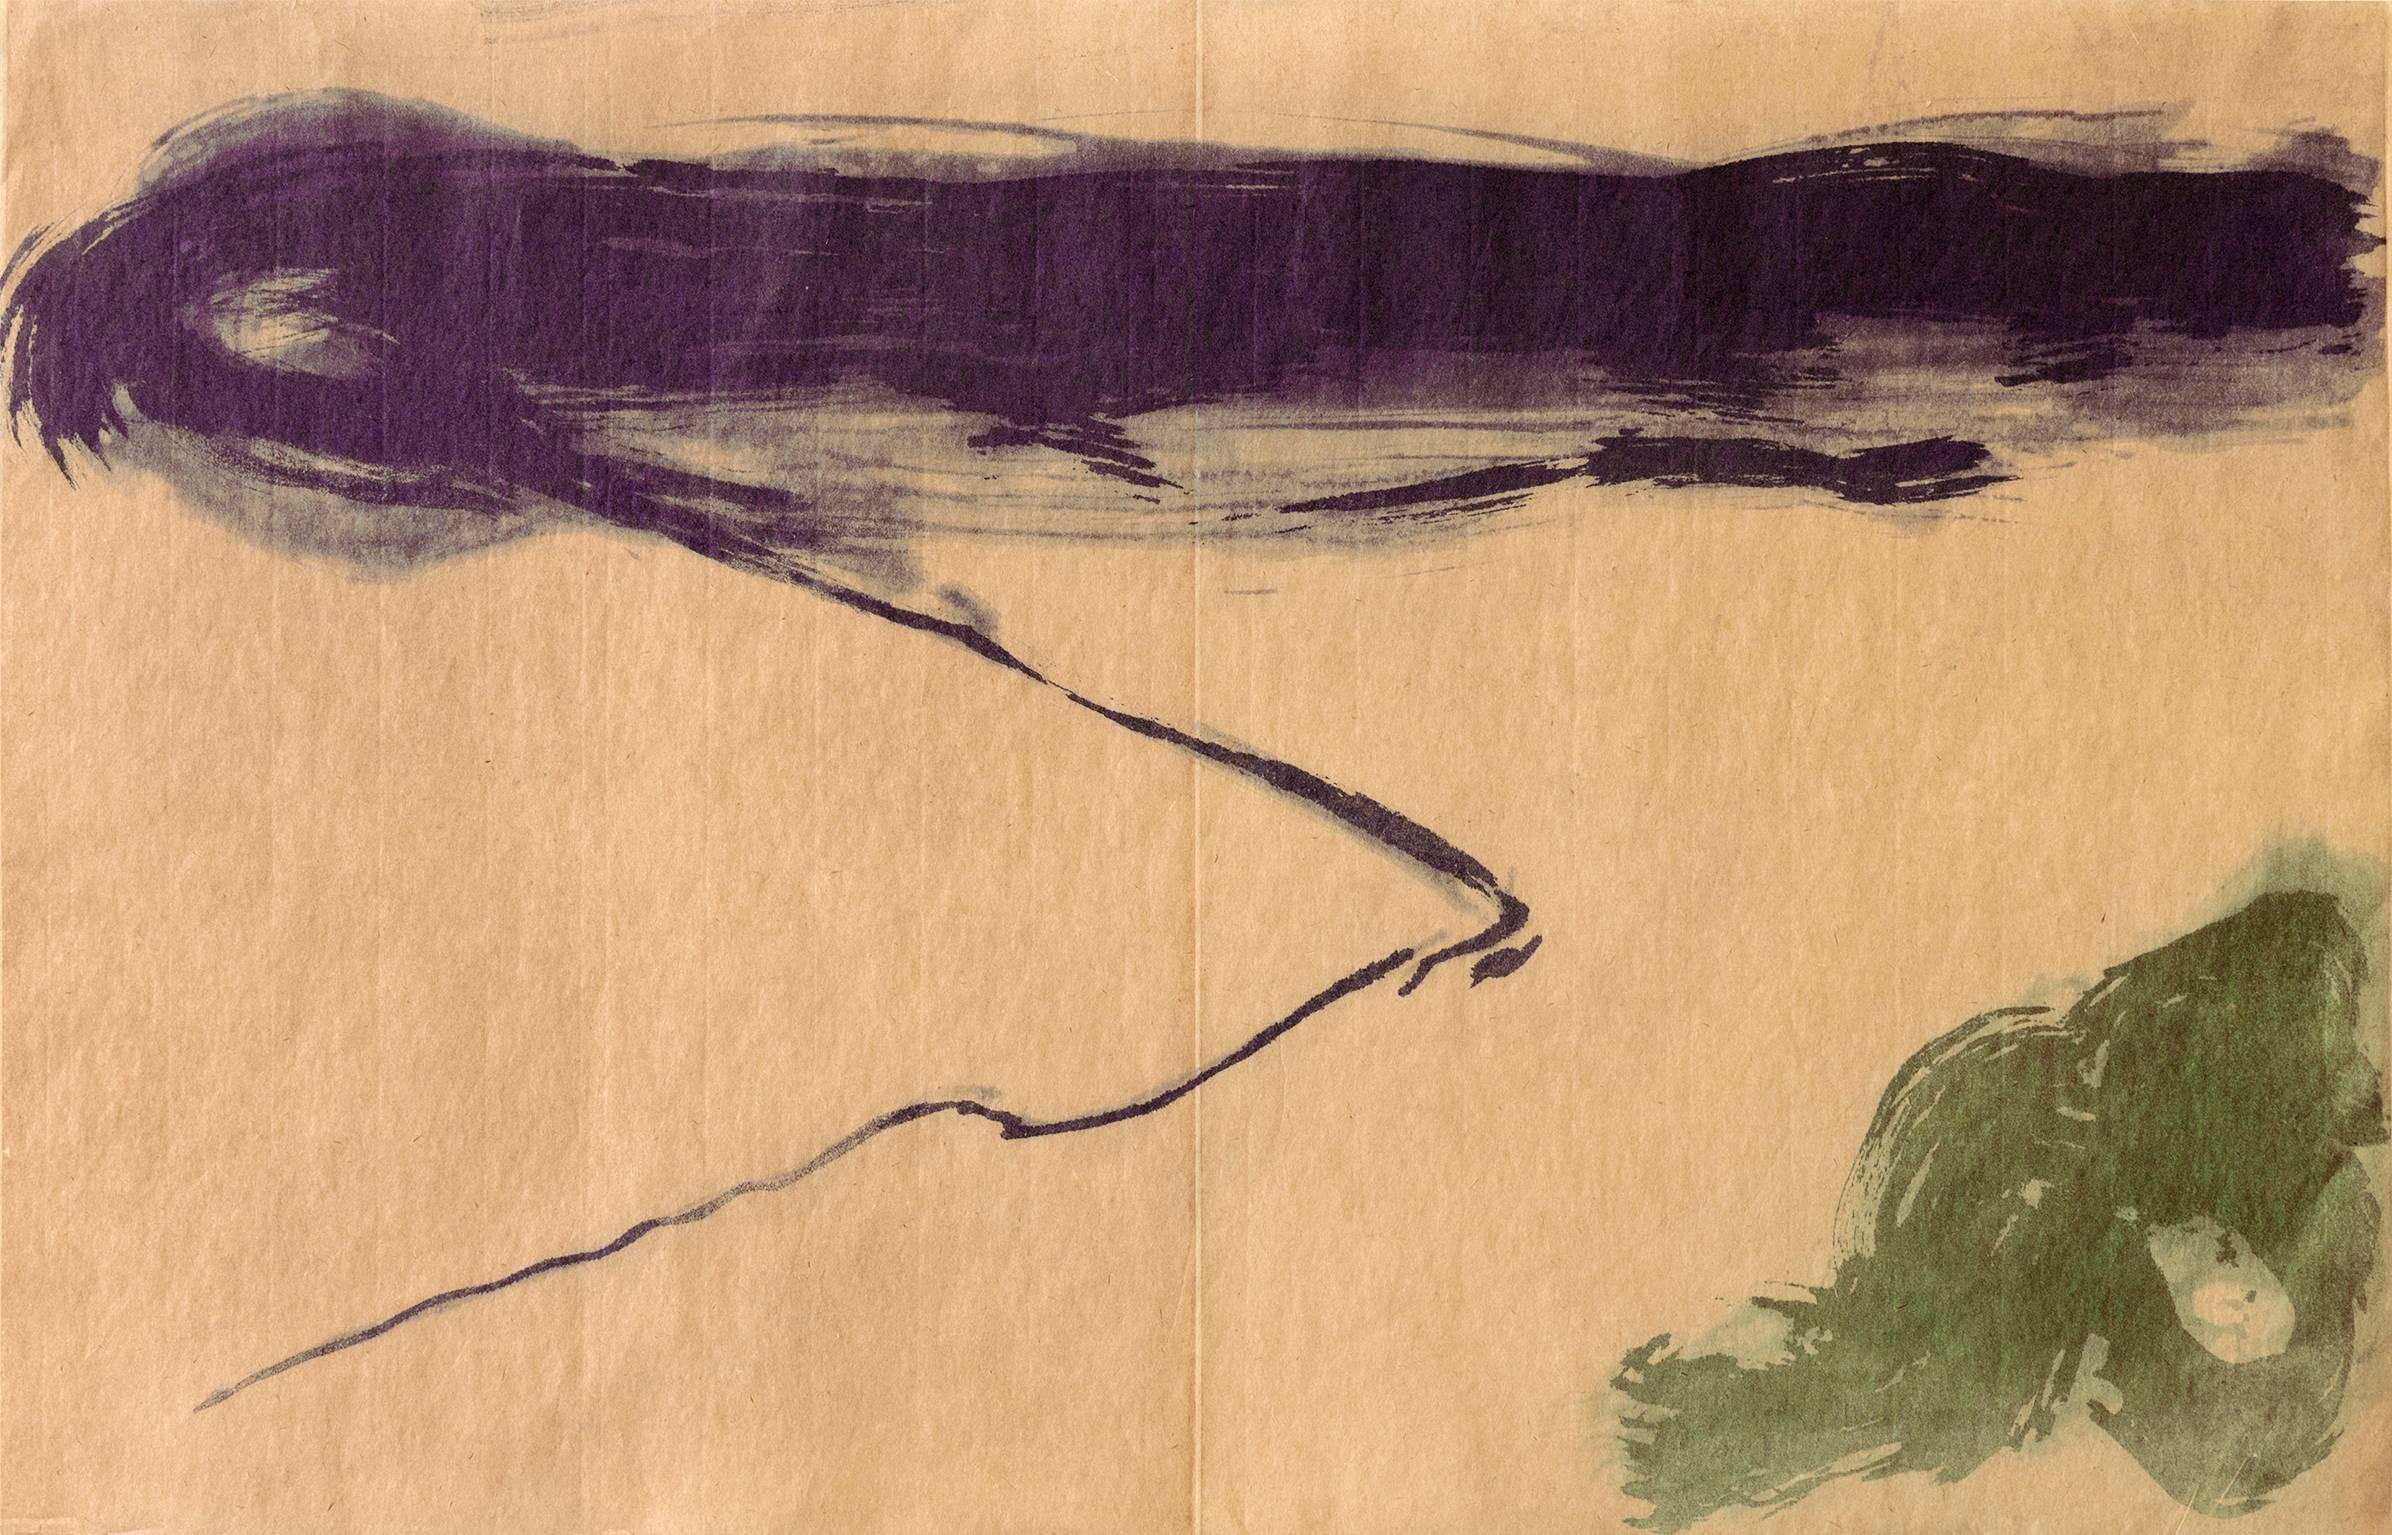 Kumi Korf Abstract Print – “View Early Morning”, abstract landscape aquatint print, violet, sap green.